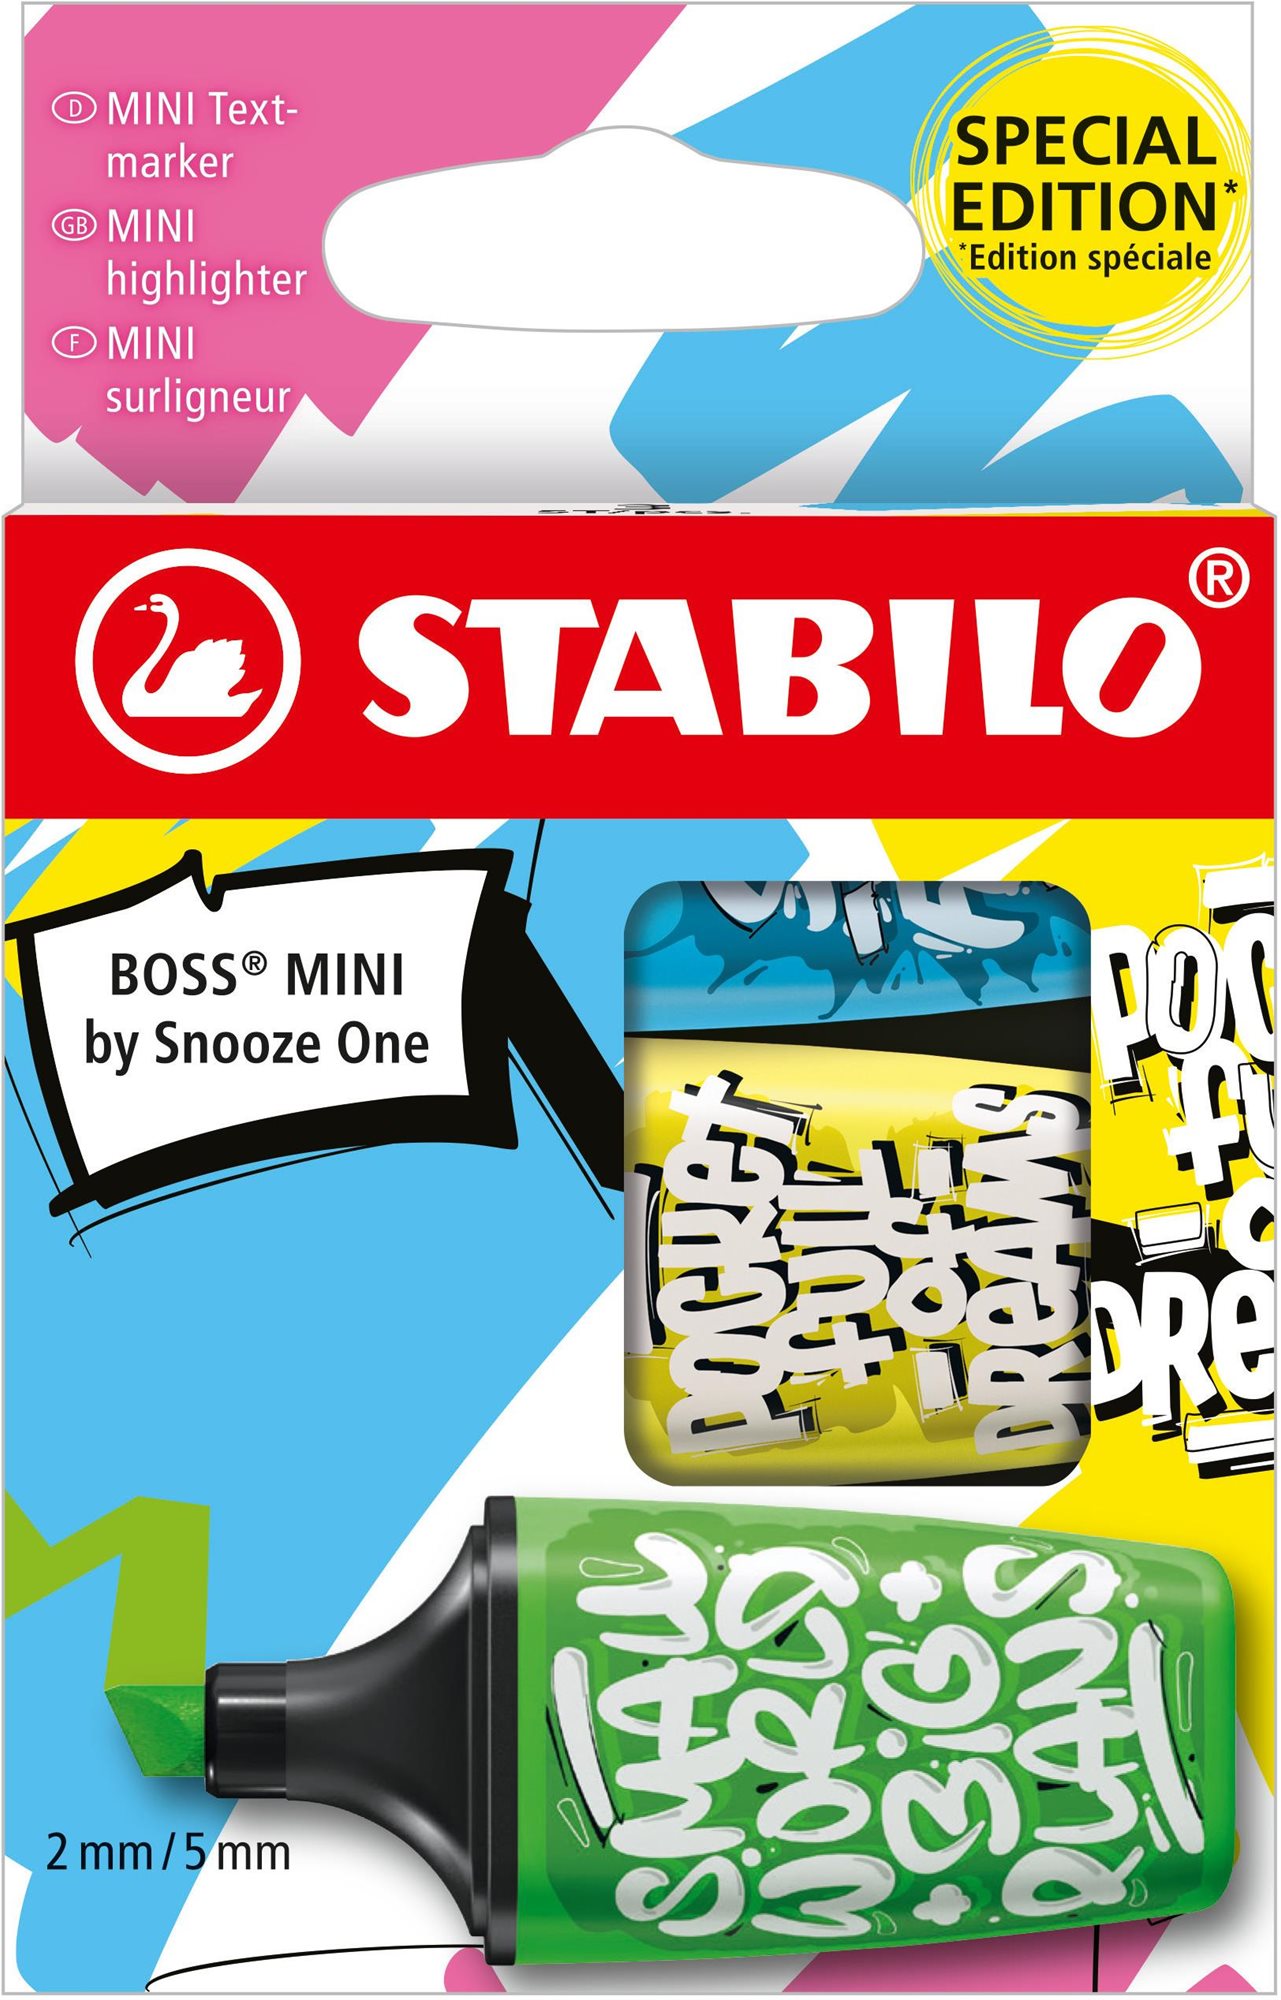 STABILO BOSS MINI by Snooze One - 3 db-os készlet - kék, sárga, zöld